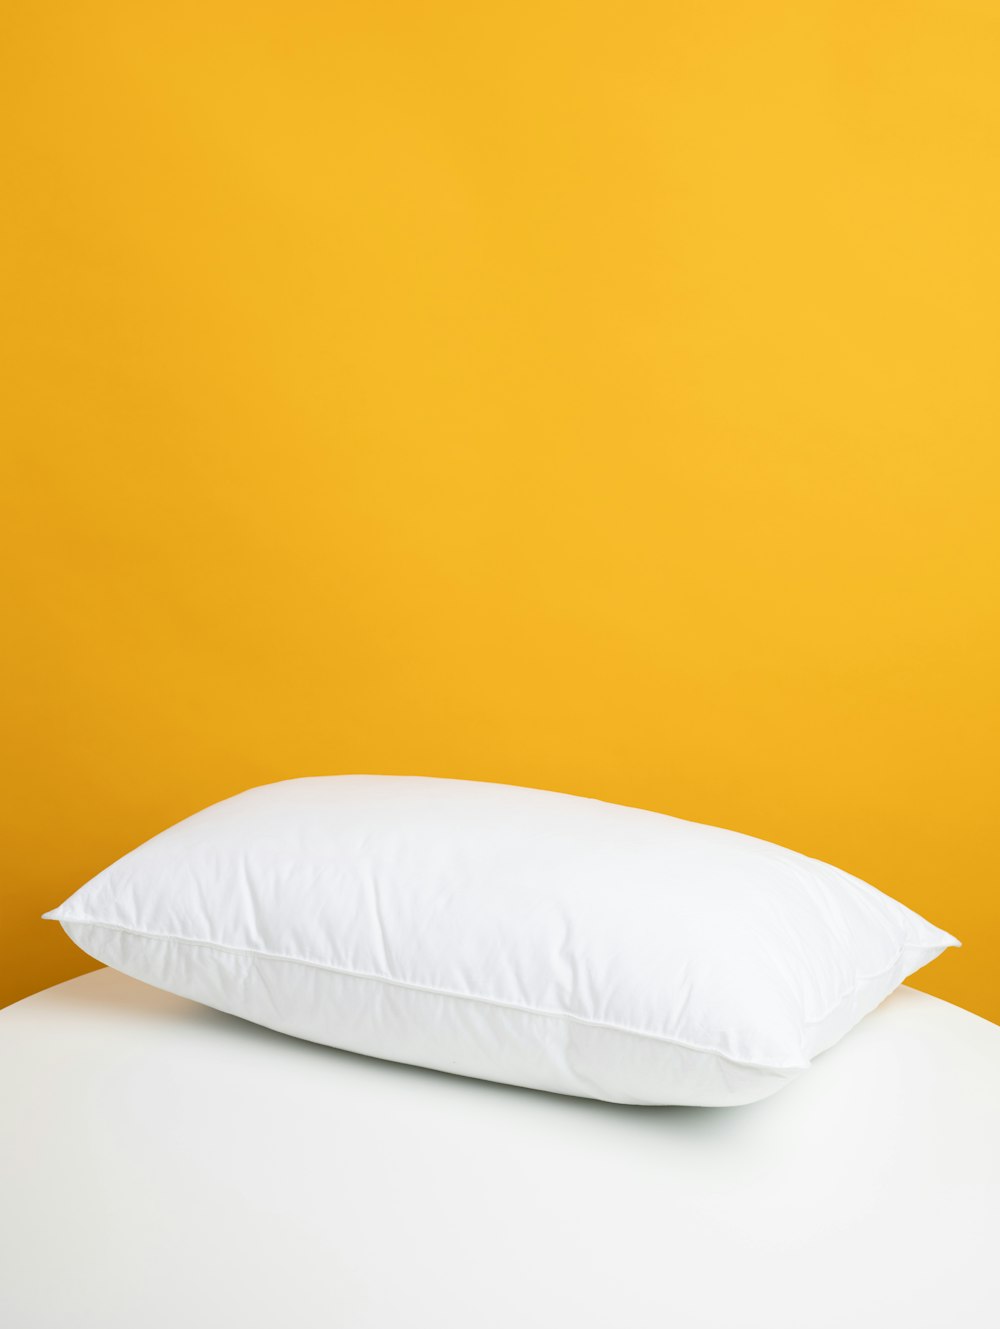 하얀 침대에 흰 베개